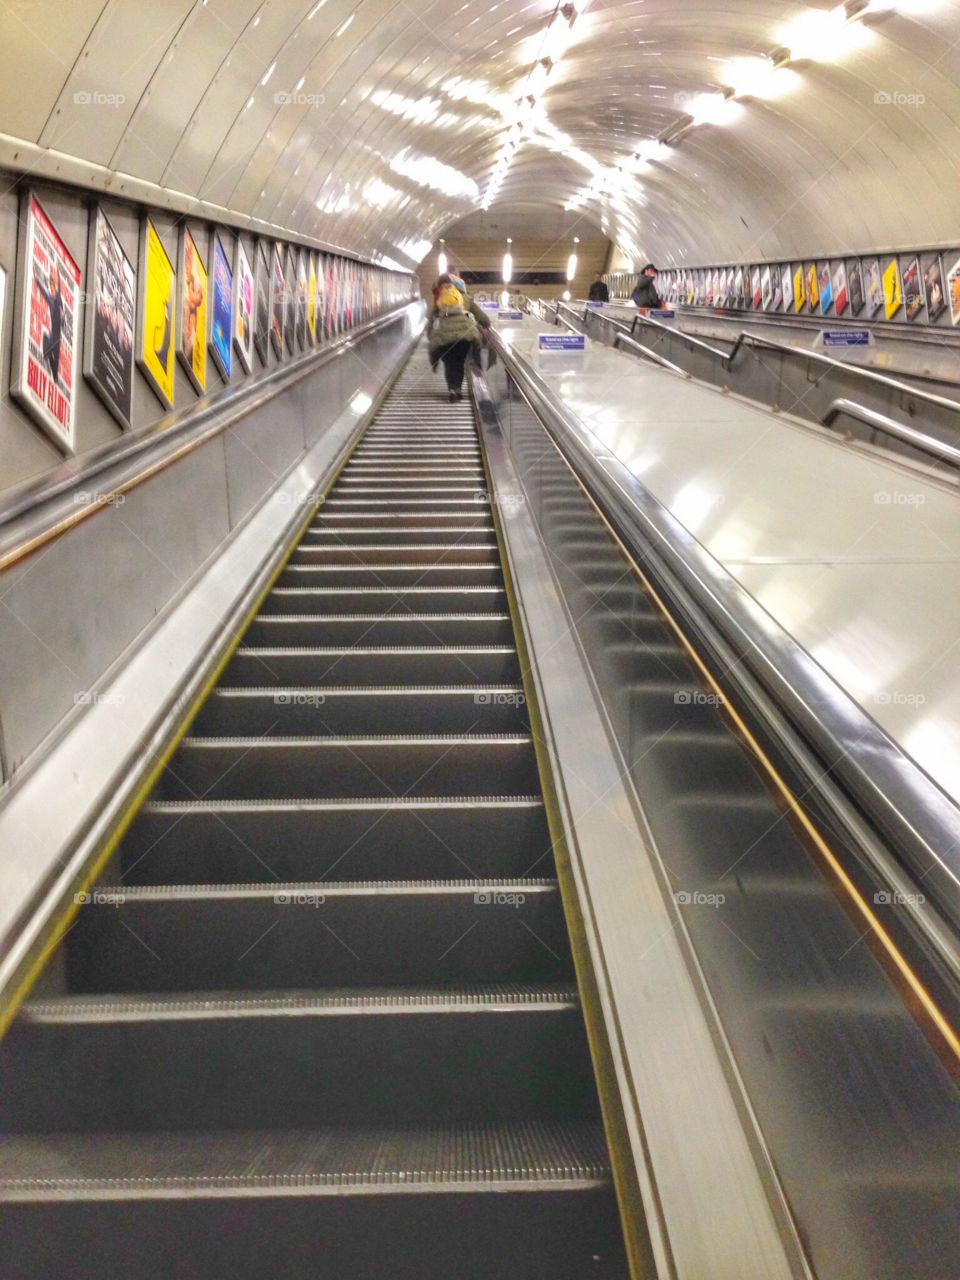 Escalator at London Marylebone underground station